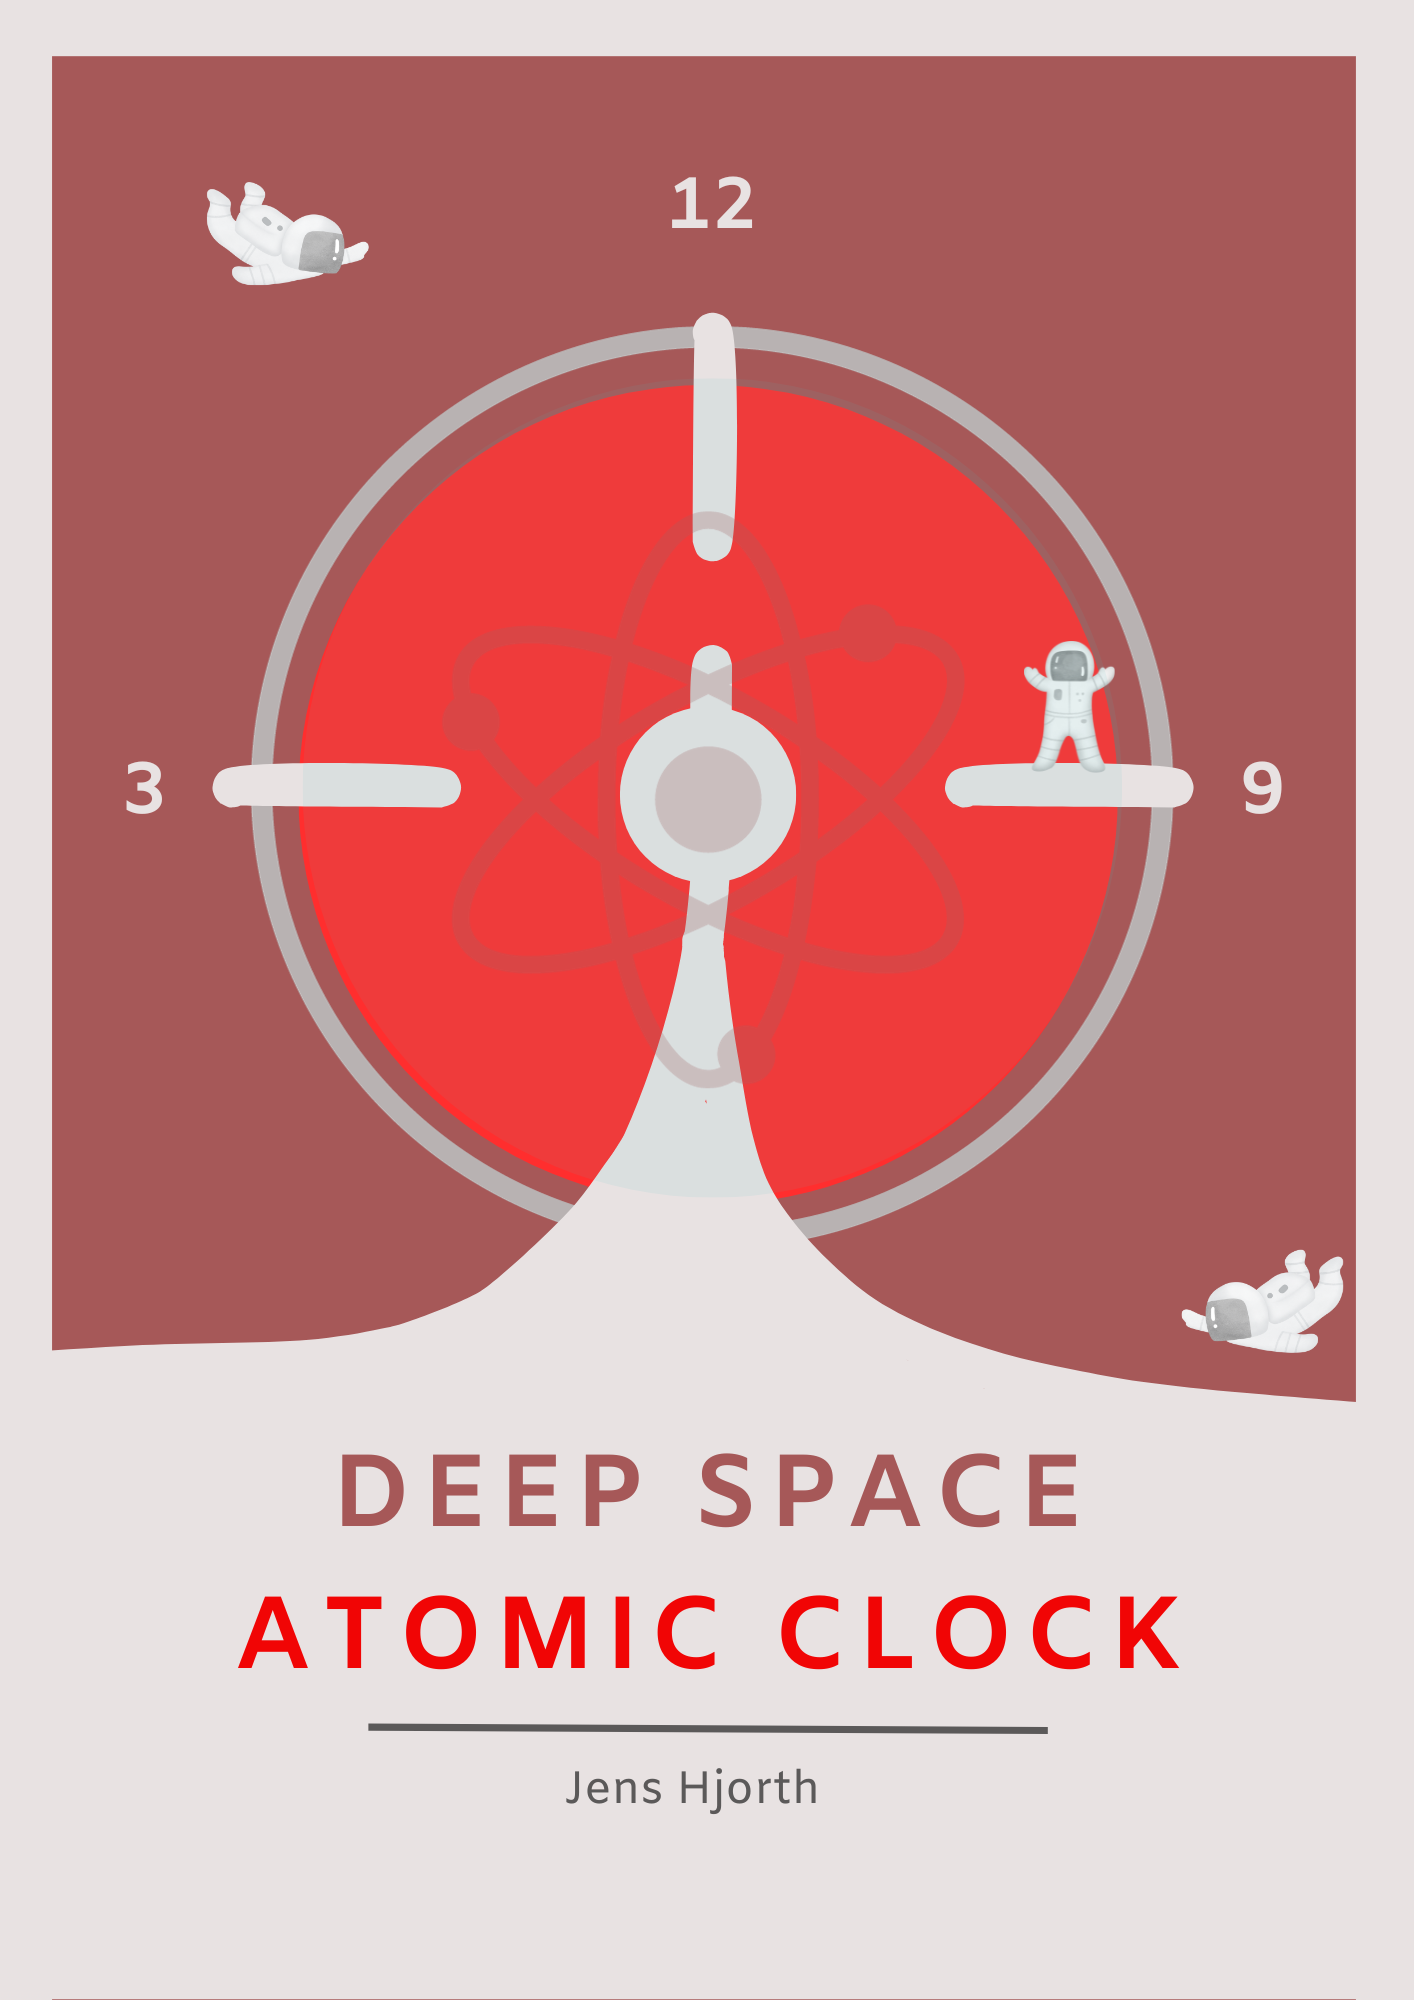 Plakat af et atom ur og rummænd i rød